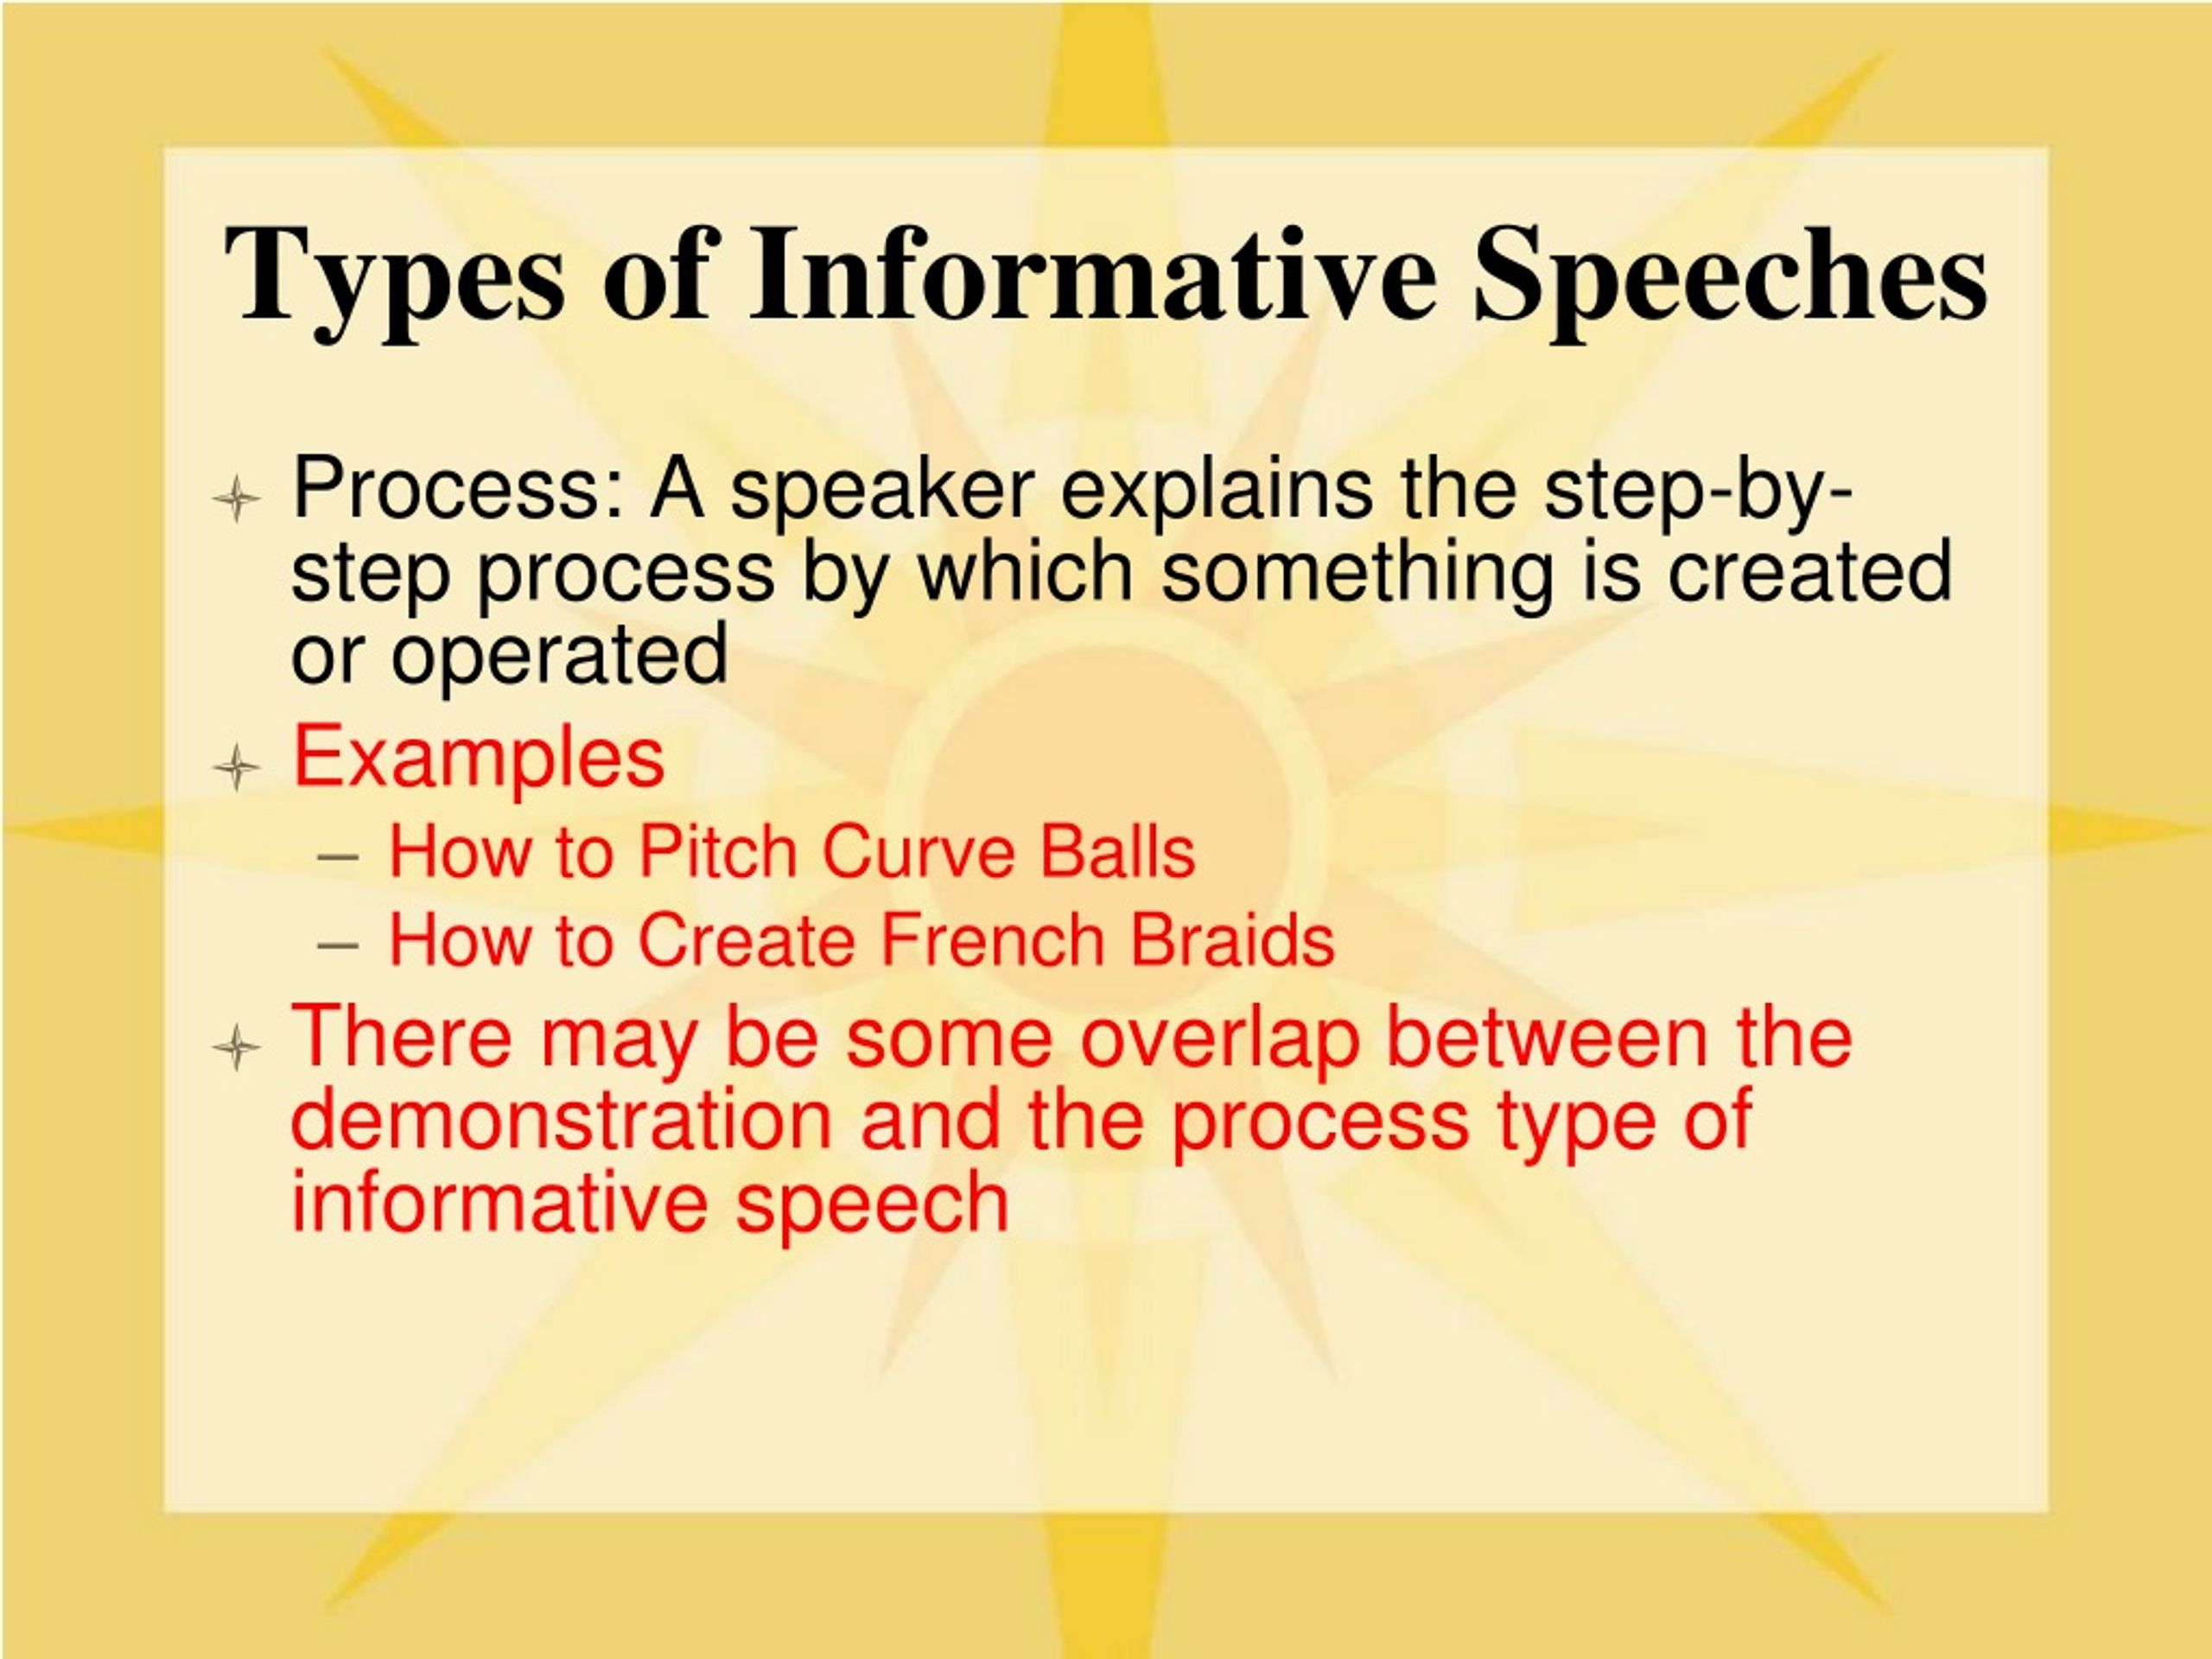 informative speech powerpoint presentation